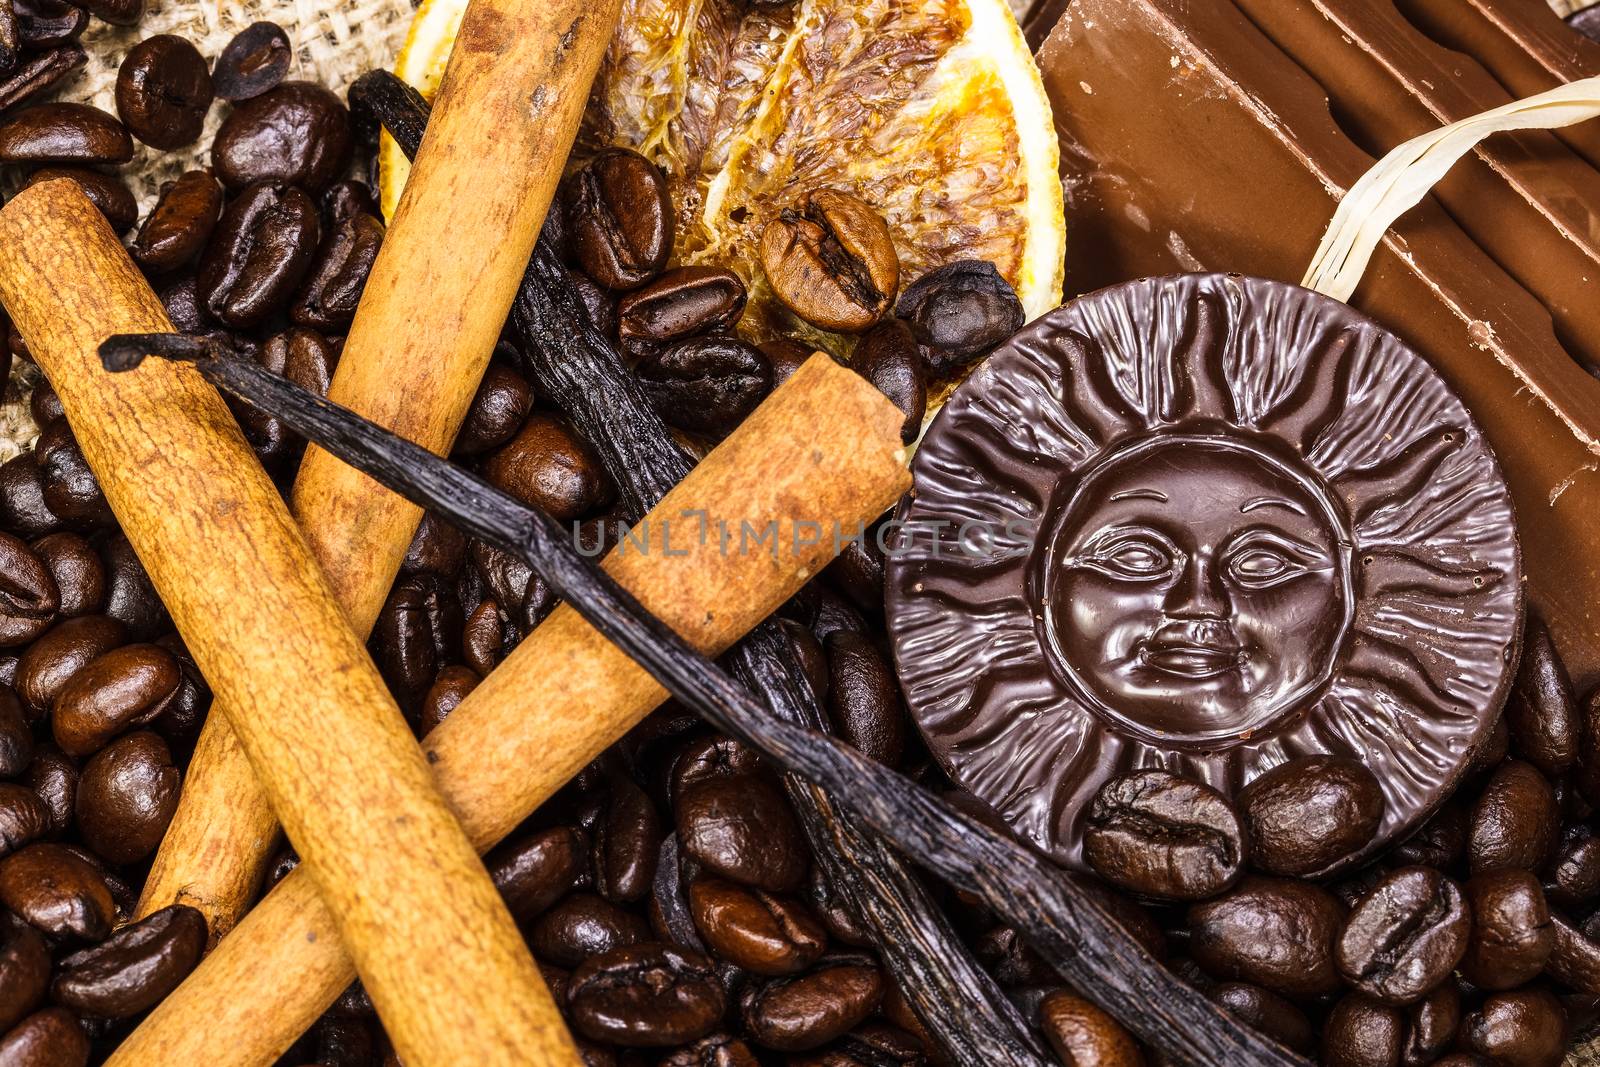 Background of gourmet coffee ingredients by Slast20